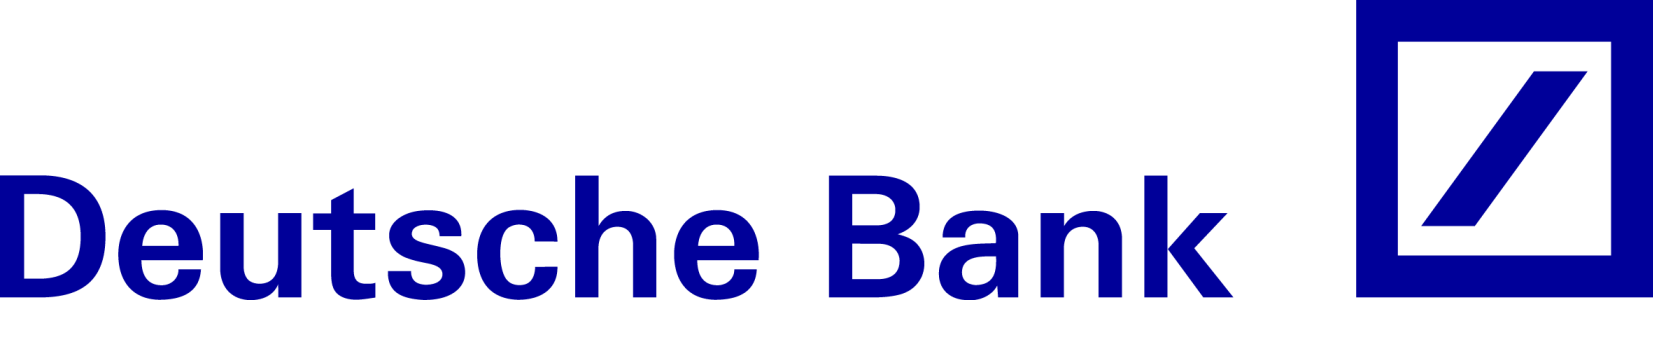 deutsche-bank-logo.png